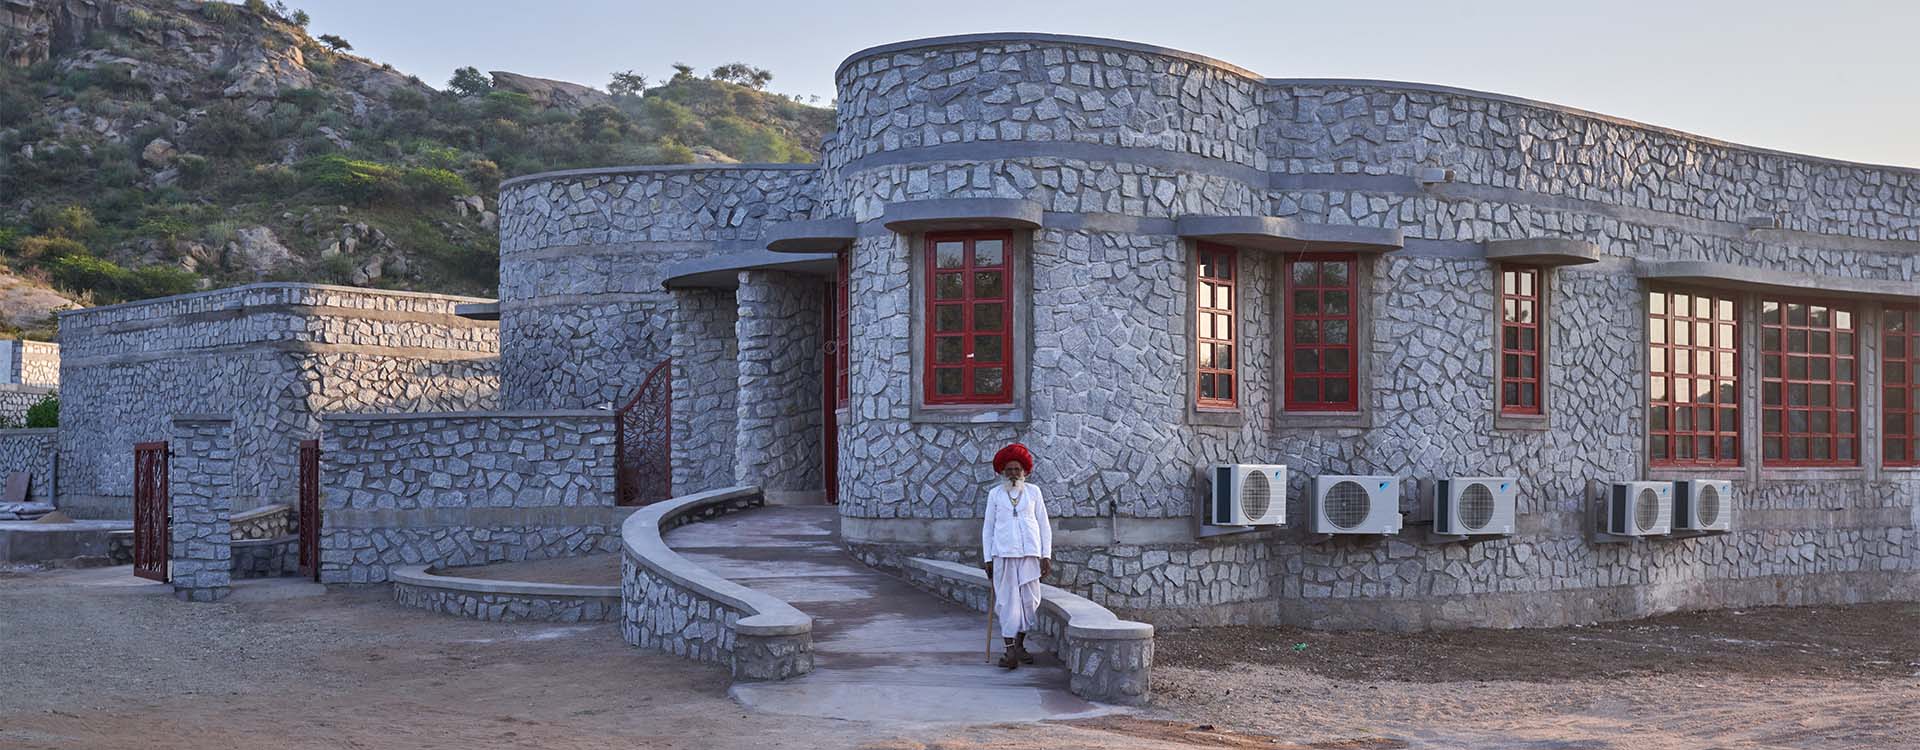 Rosastays Partner Homes, Pushkar Fort